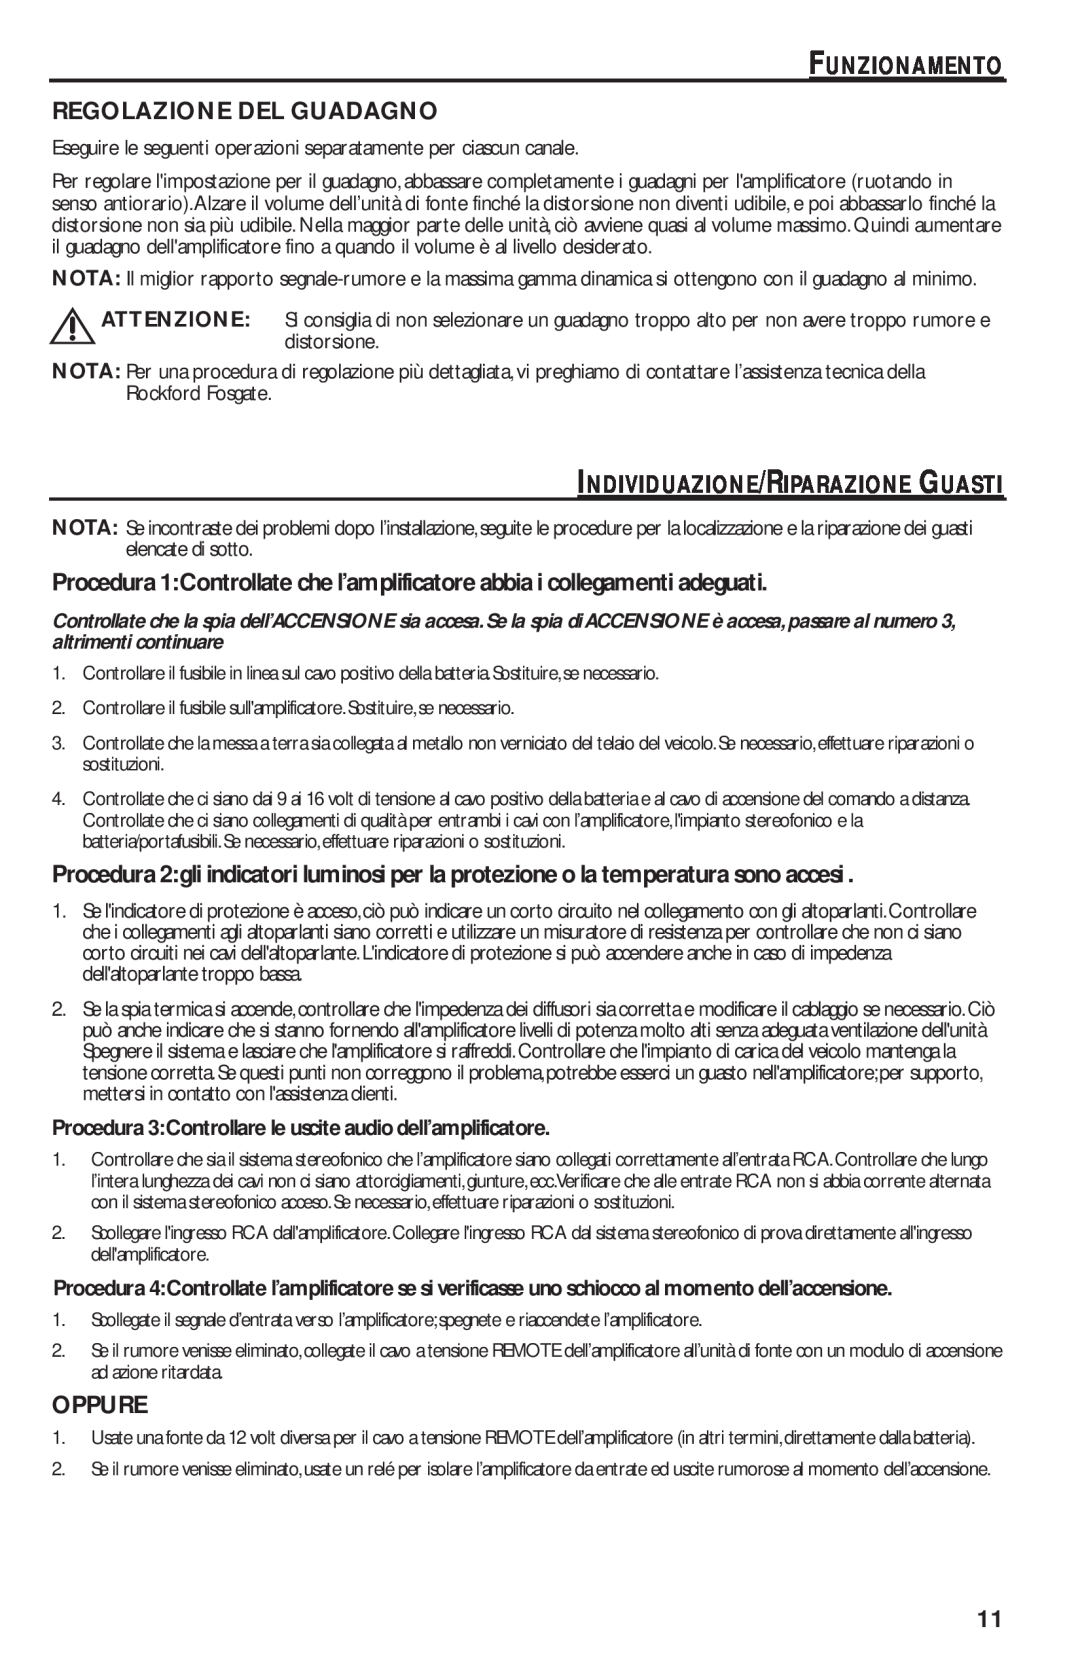 Rockford Fosgate T1000-4 manual Funzionamento Regolazione Del Guadagno, Individuazione/Riparazione Guasti, Oppure 